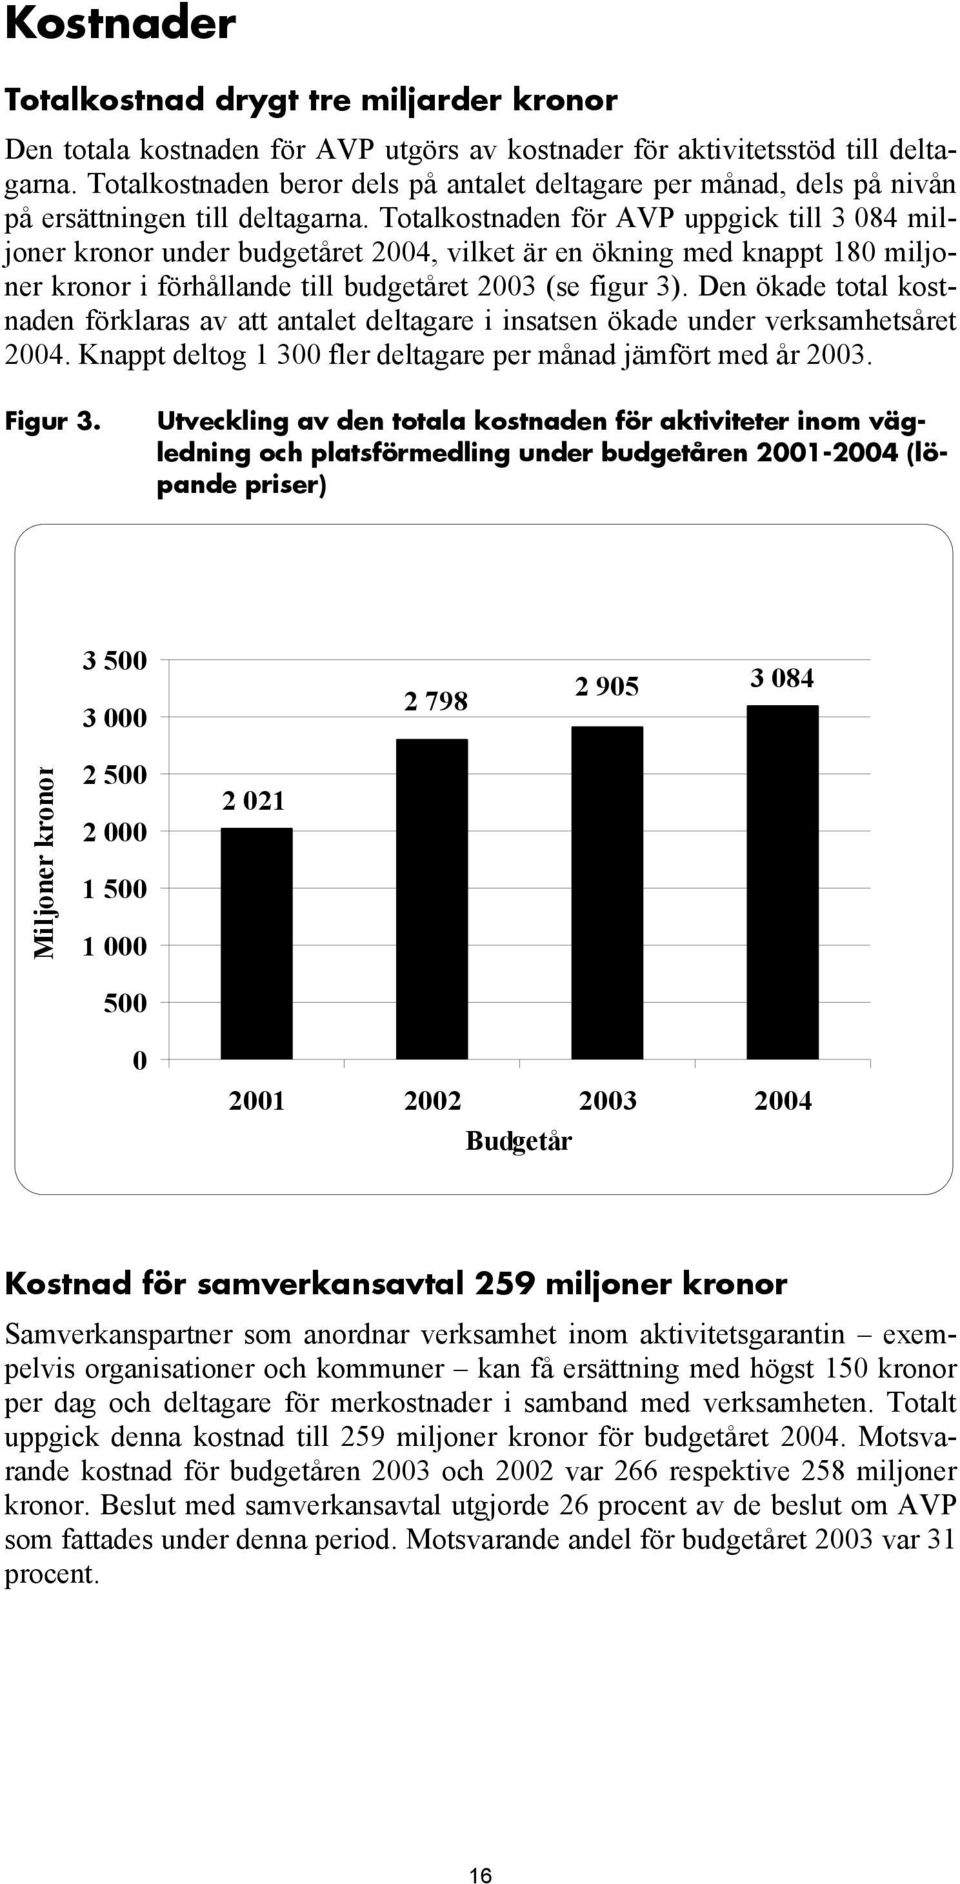 Totalkostnaden för AVP uppgick till 3 084 miljoner kronor under budgetåret 2004, vilket är en ökning med knappt 180 miljoner kronor i förhållande till budgetåret 2003 (se figur 3).